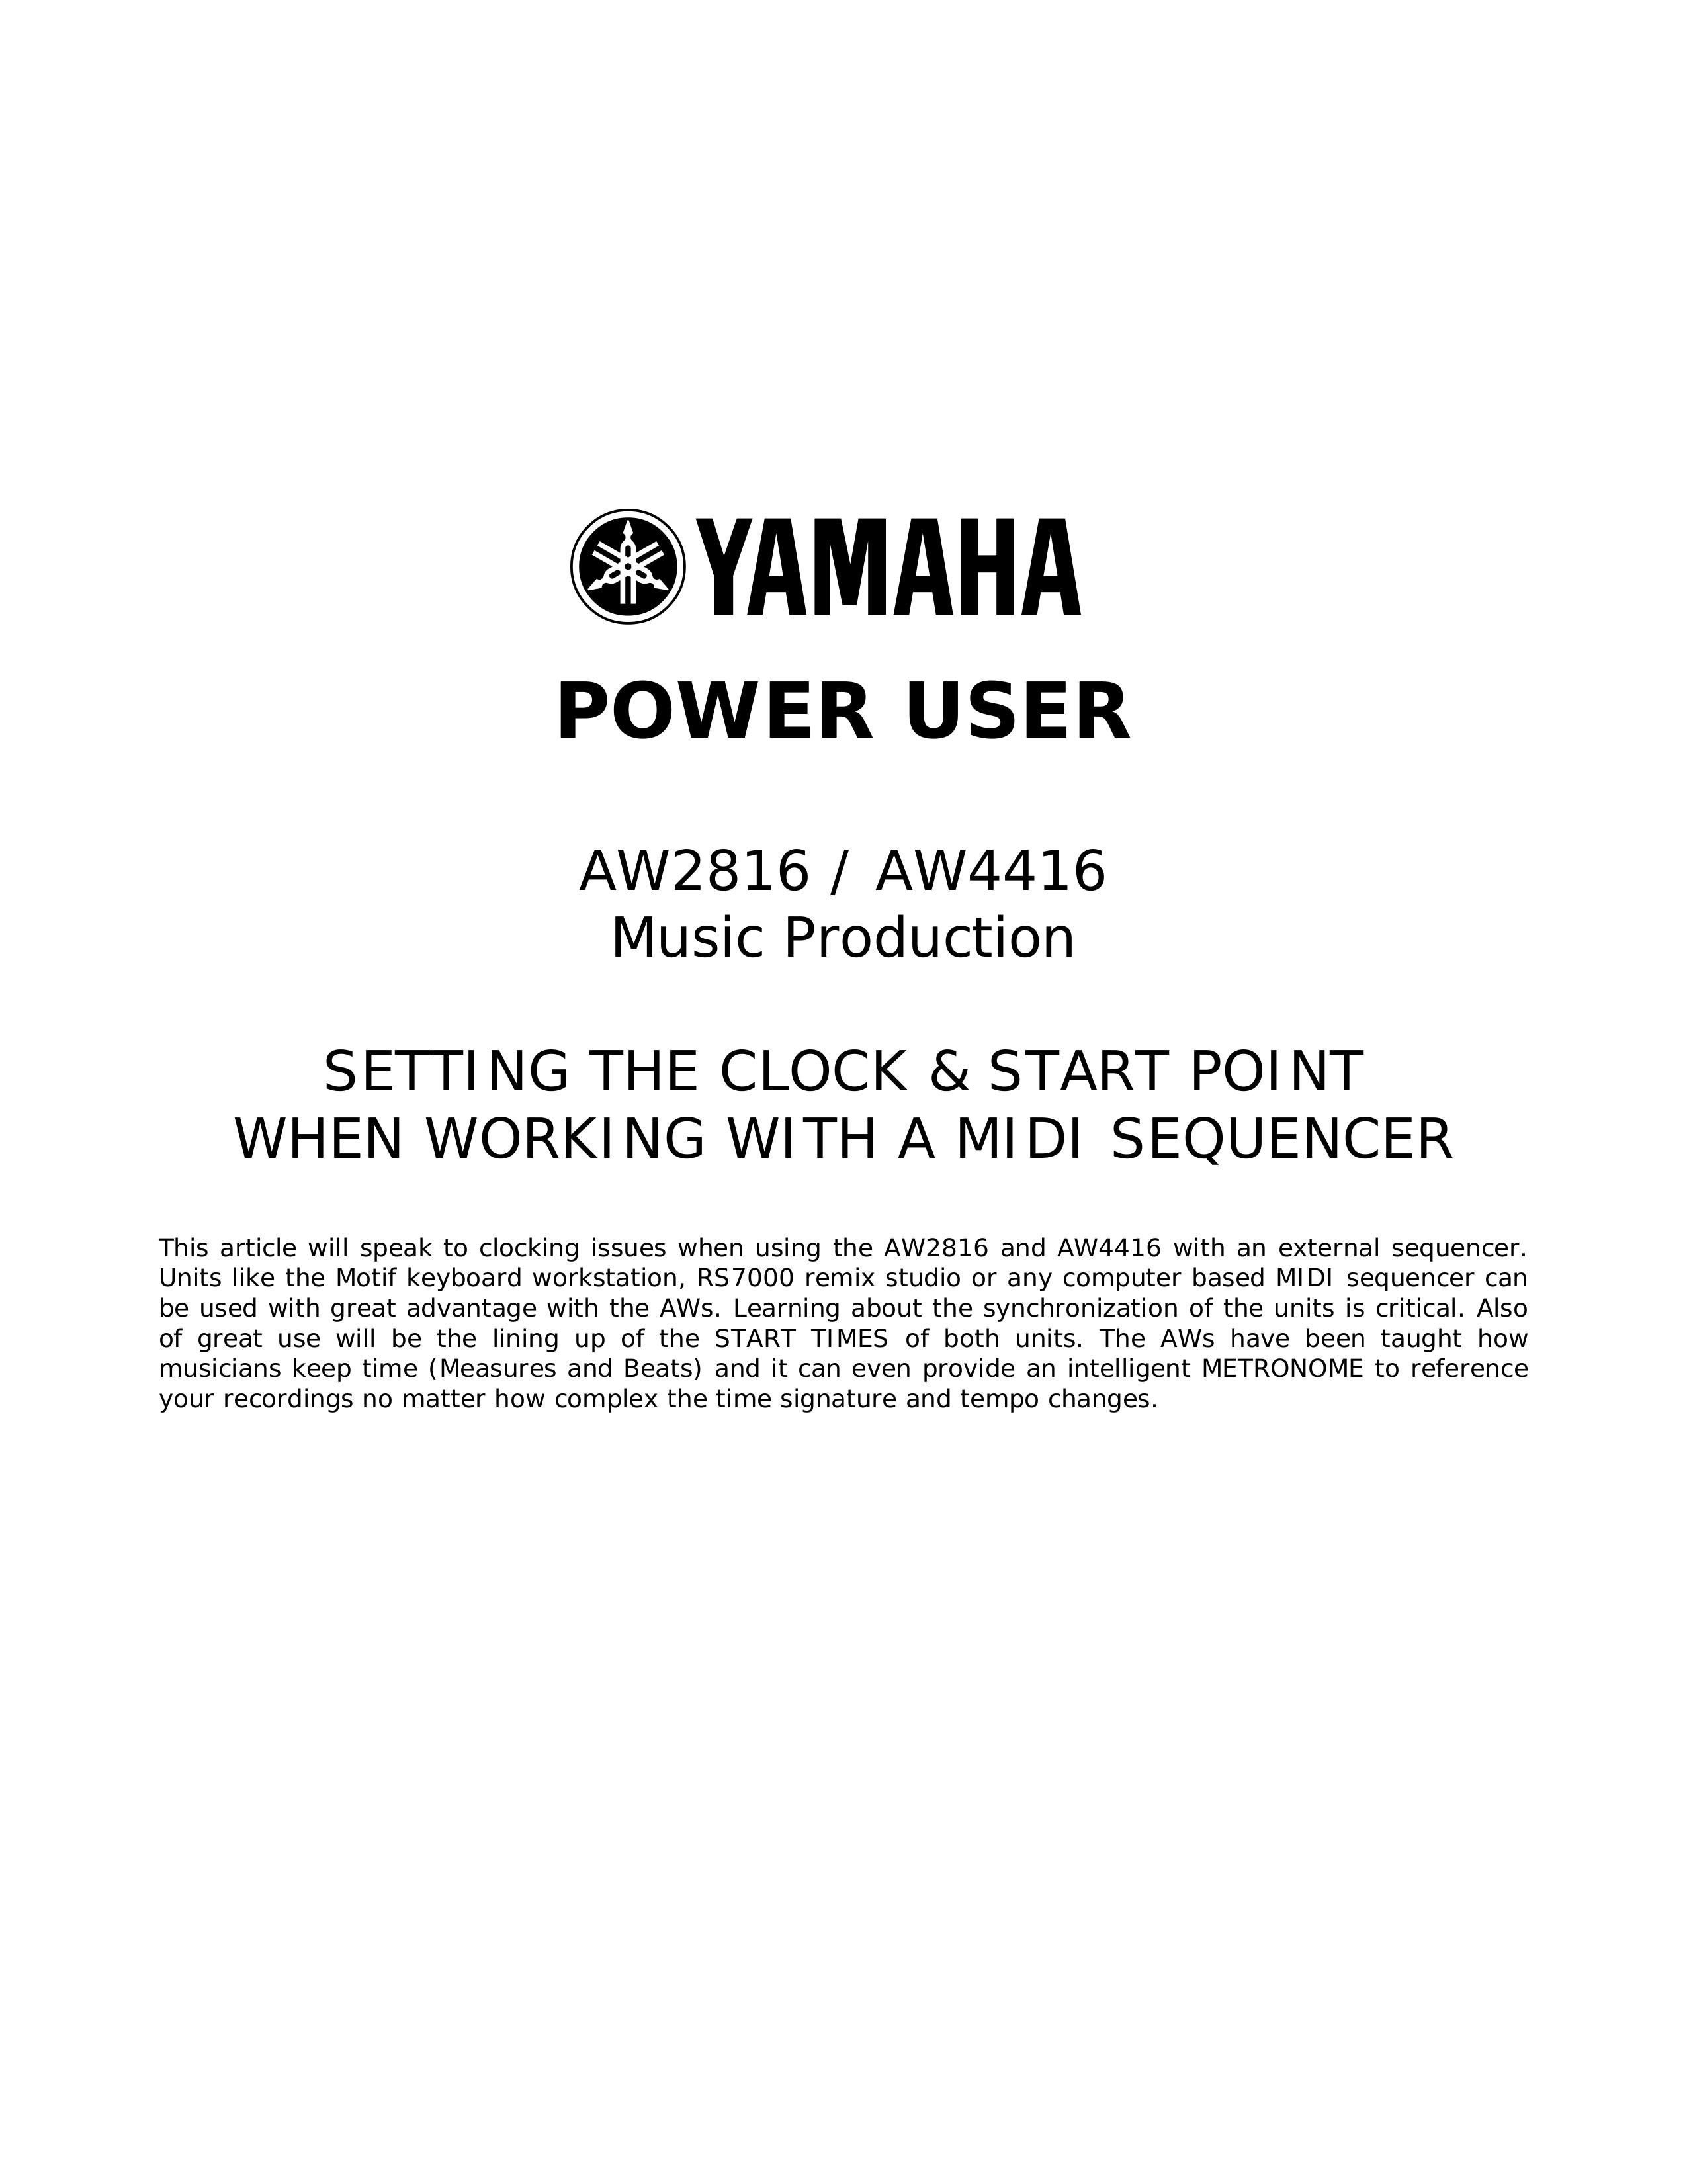 Yamaha AW4416 Music Mixer User Manual